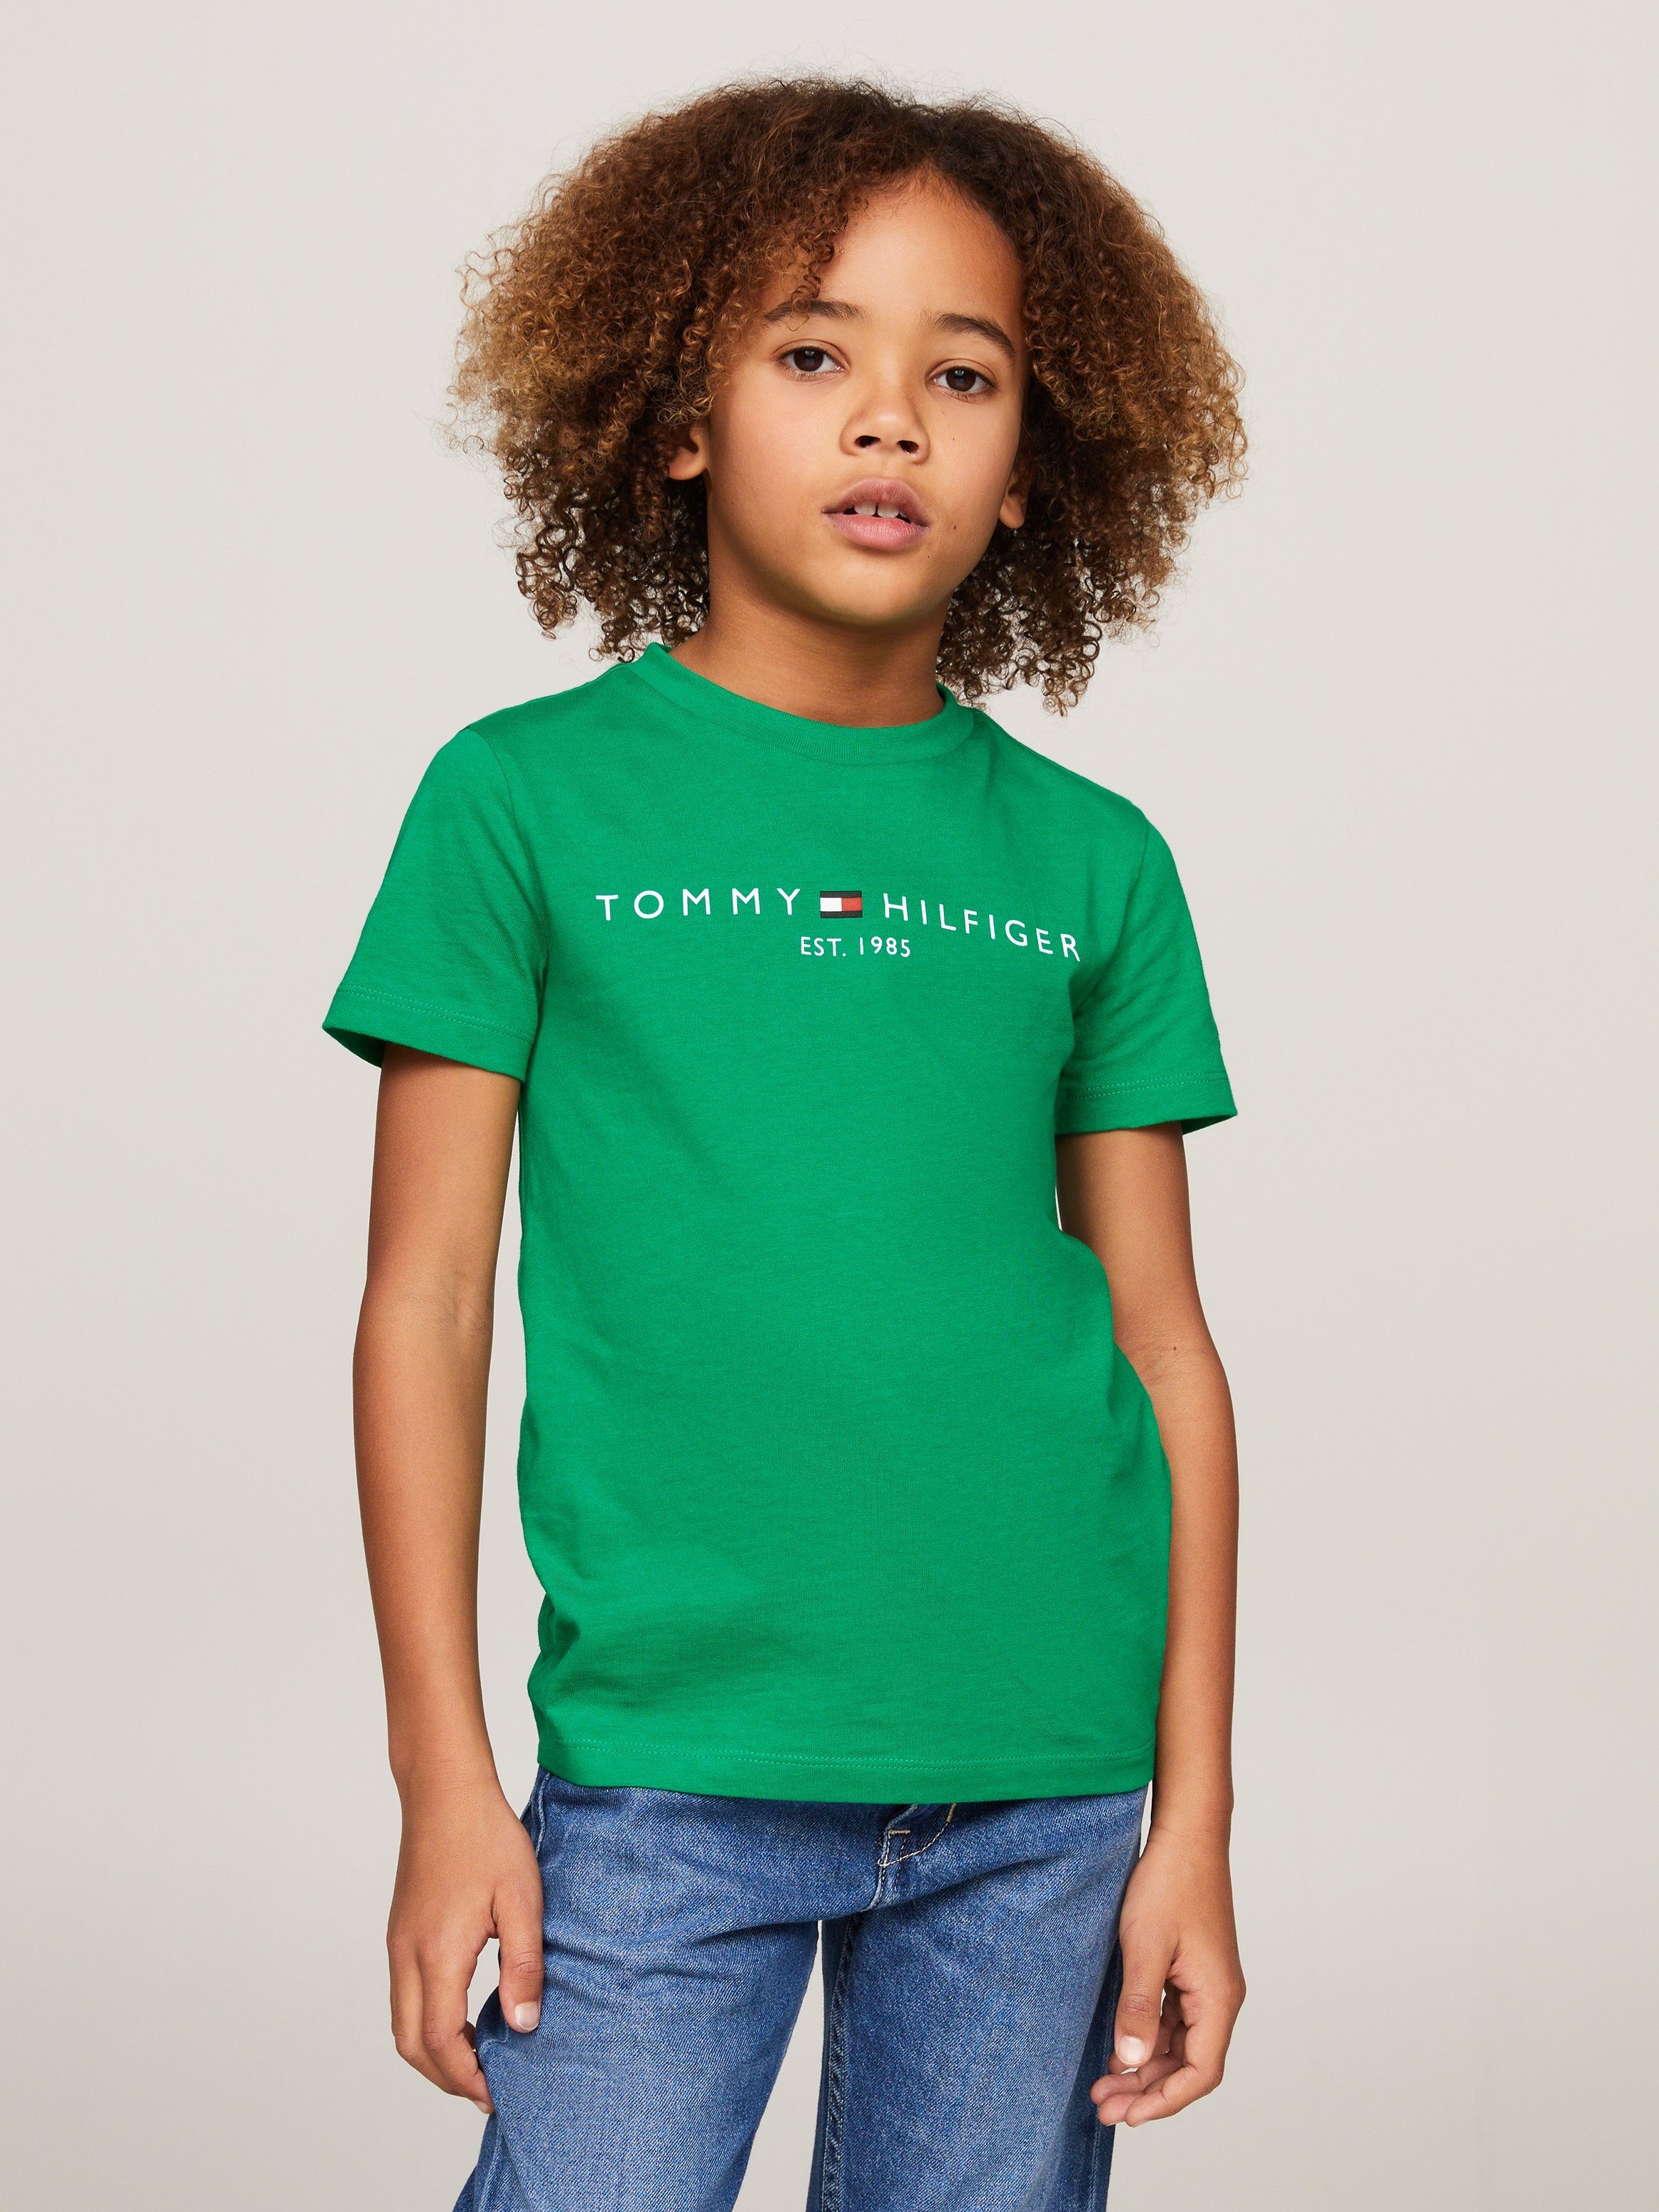 Tommy Hilfiger T-shirt met logo groen Katoen Ronde hals 104